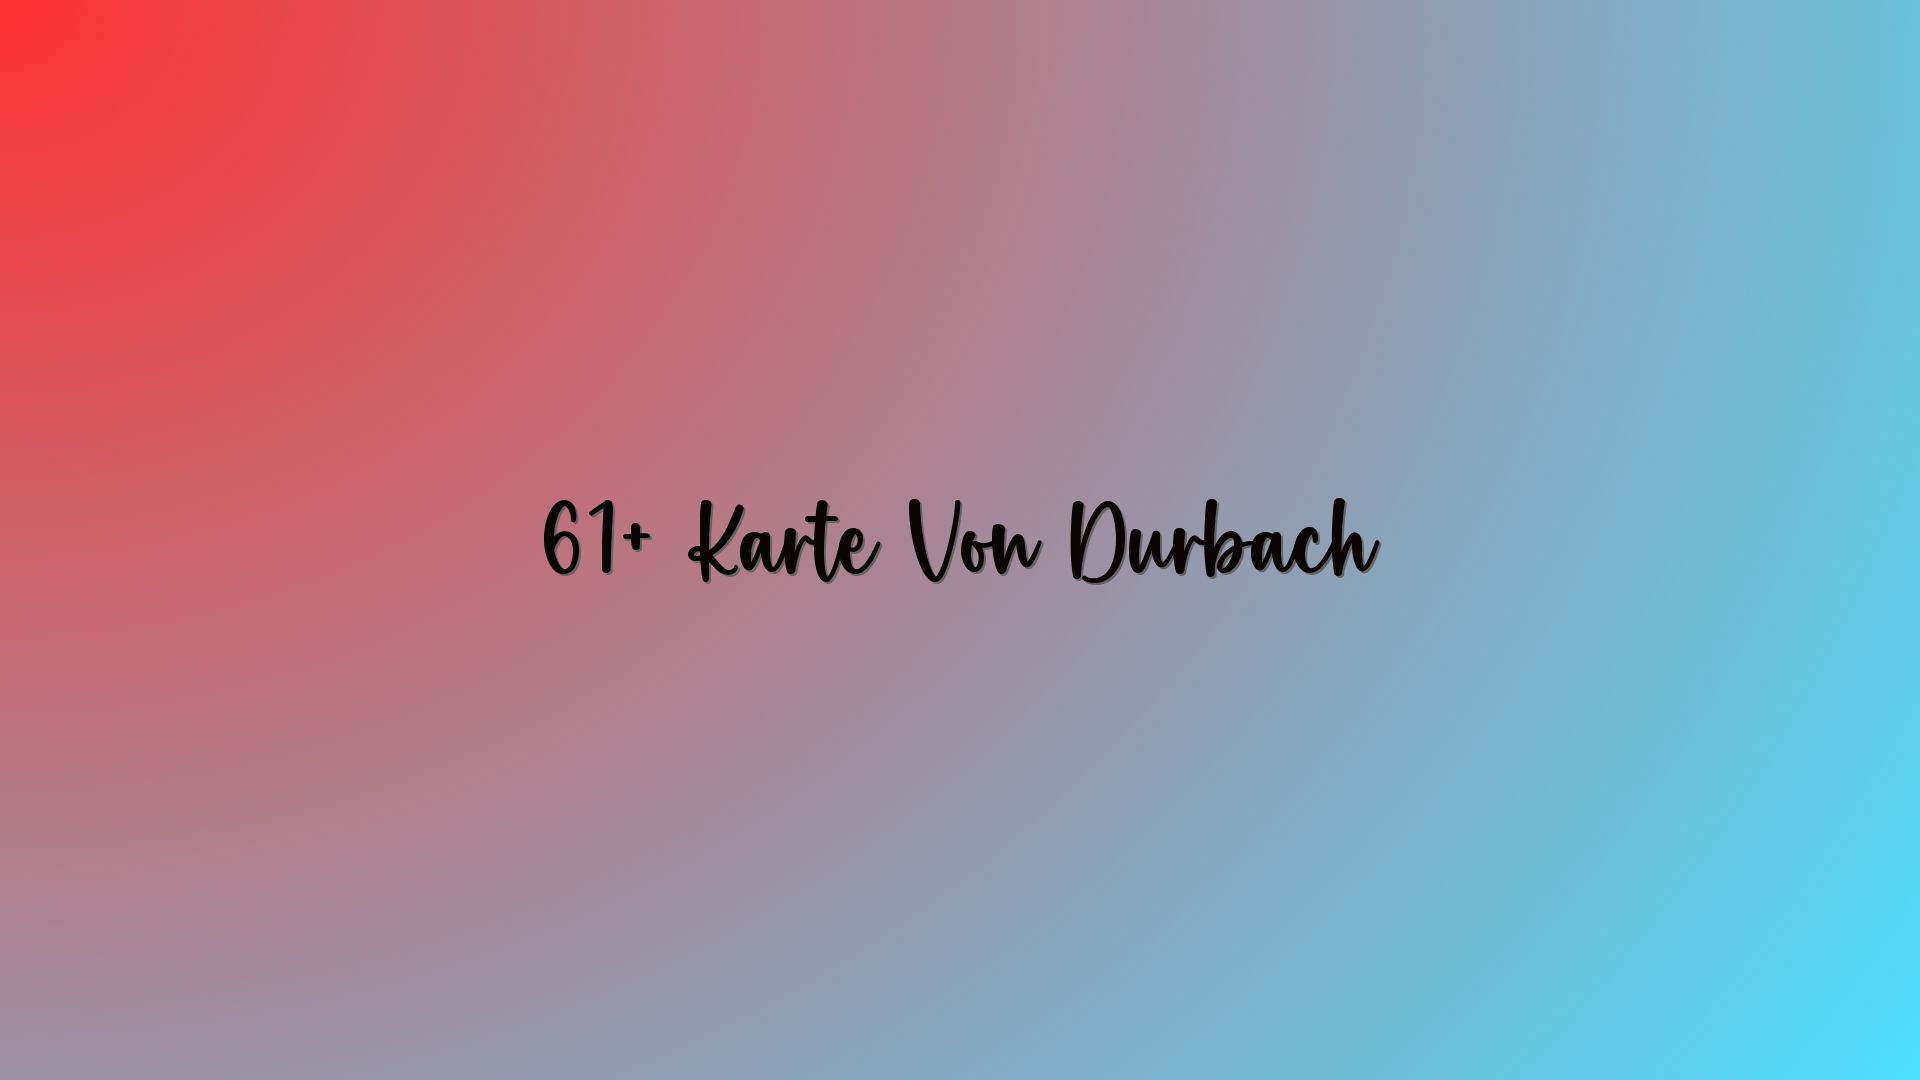 61+ Karte Von Durbach